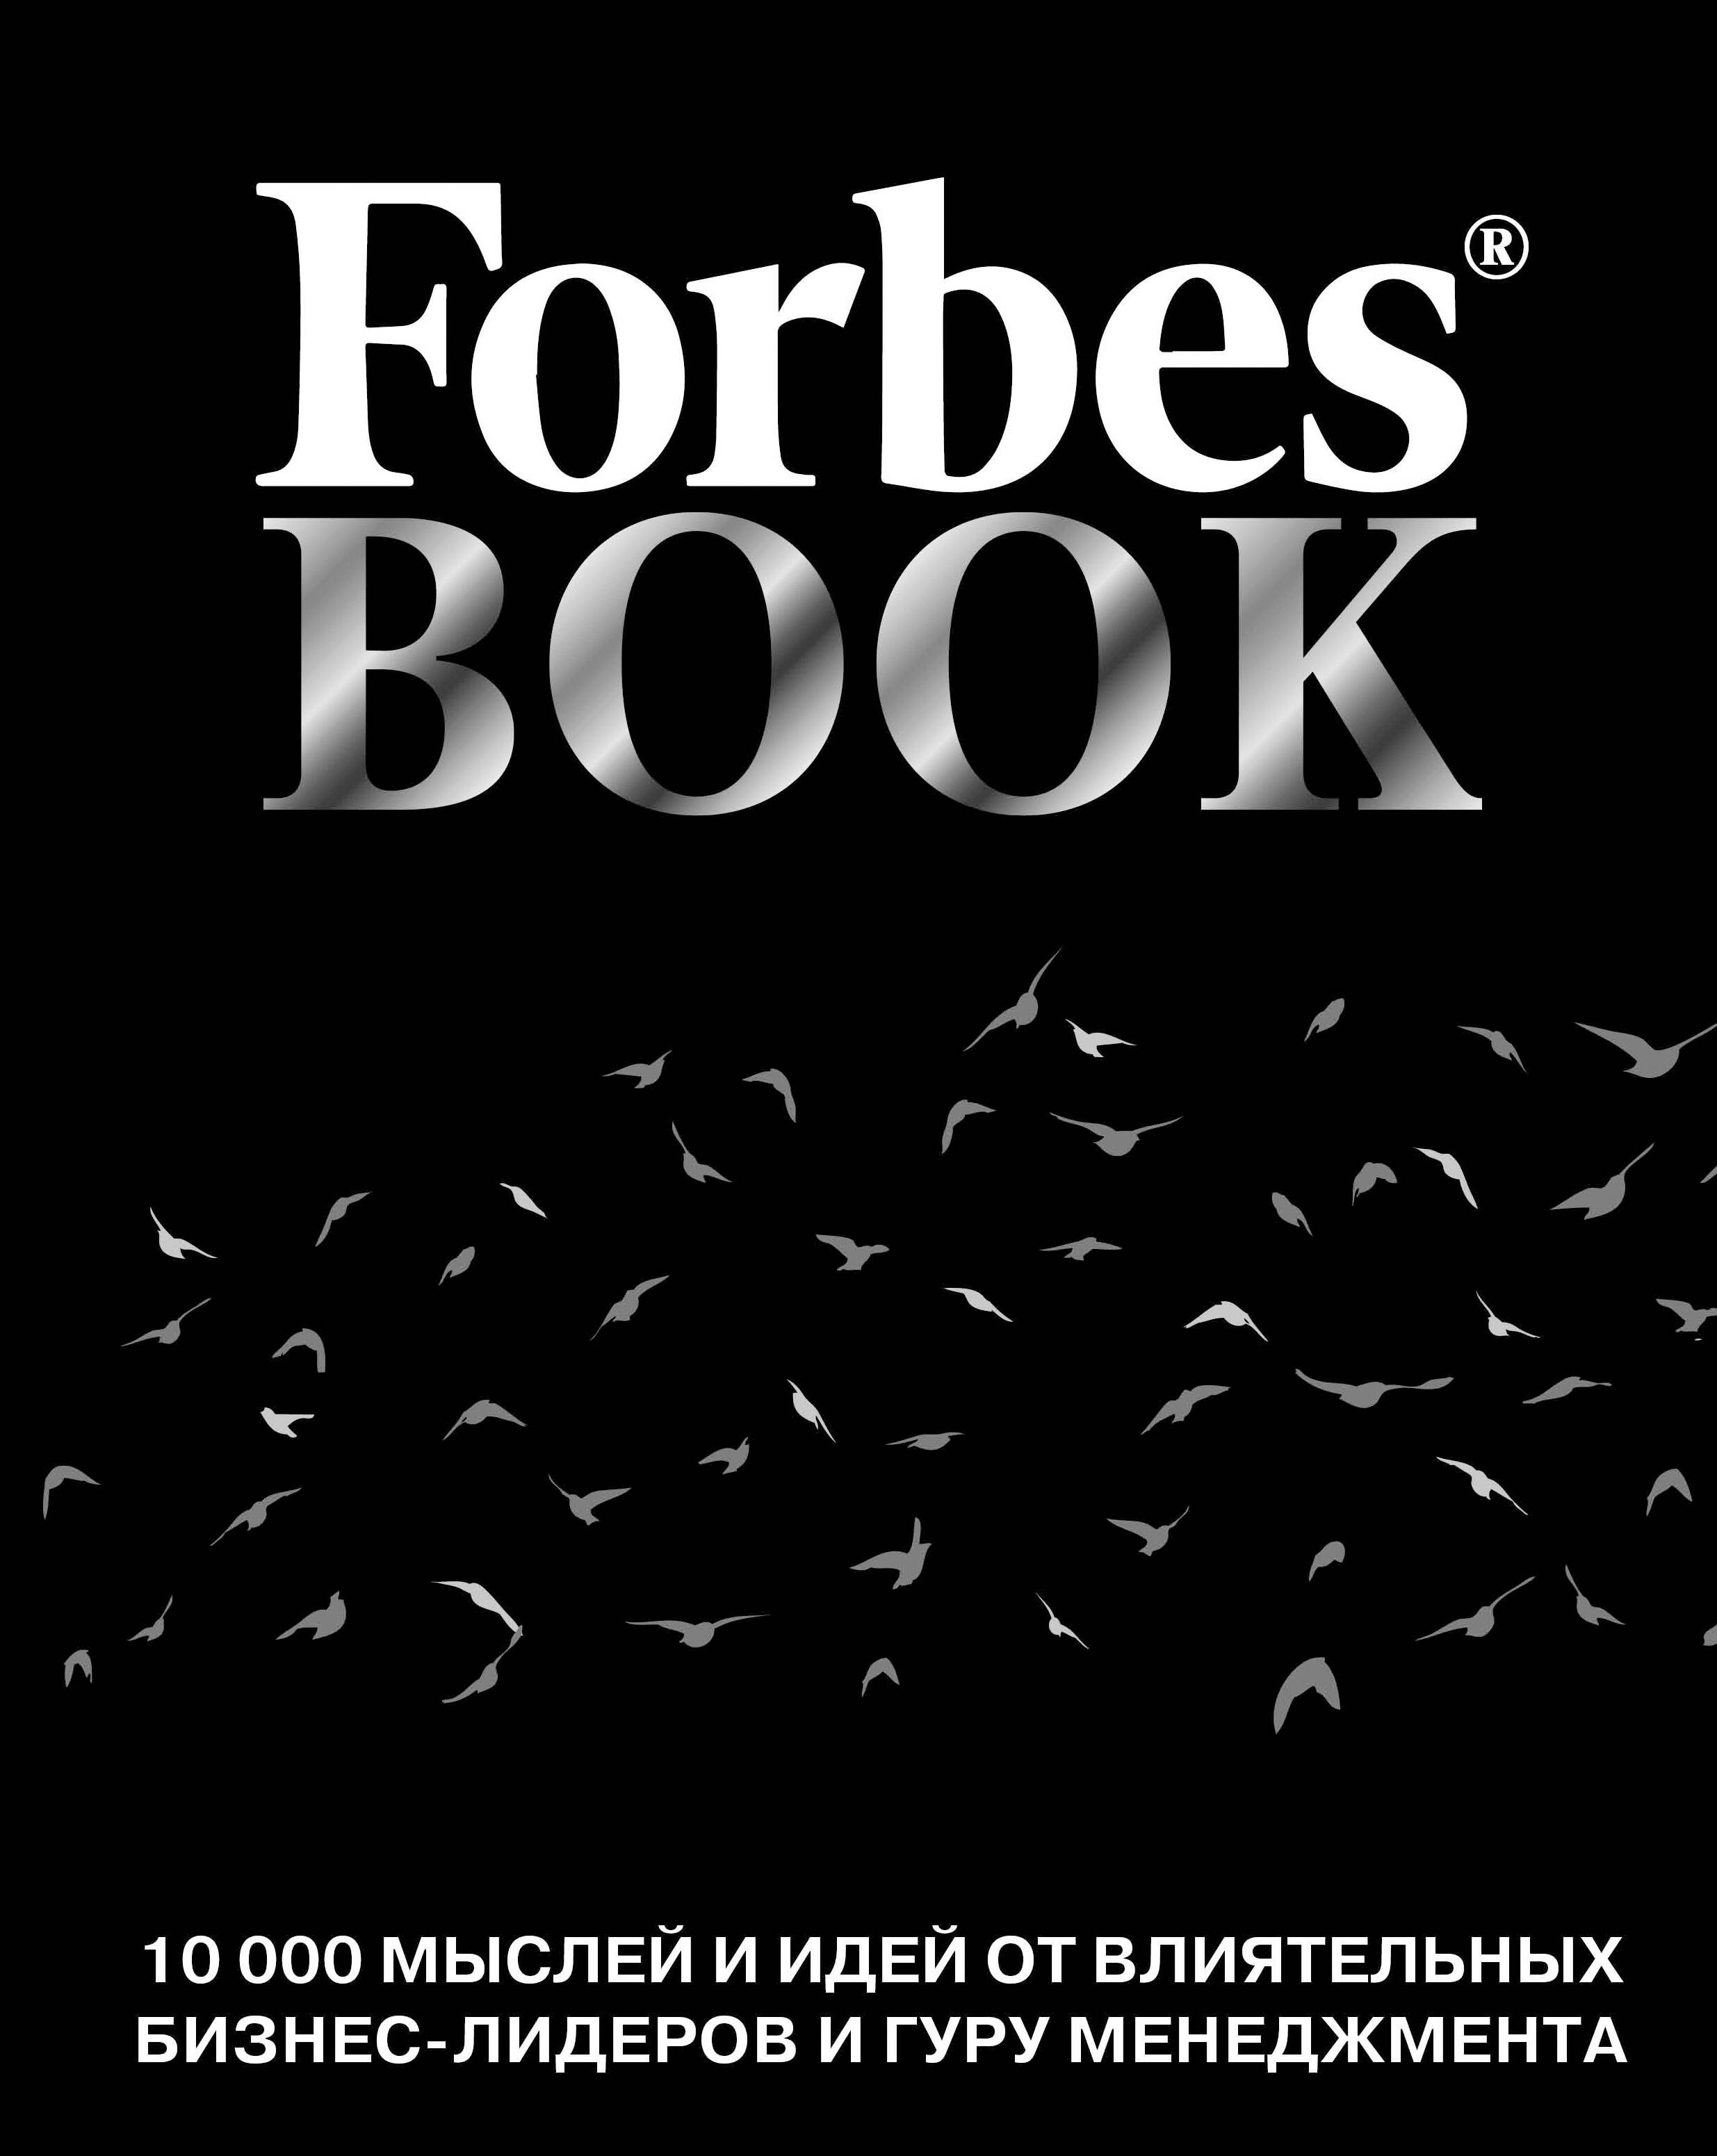 Гудман Тед Forbes Book: 10 000 мыслей и идей от влиятельных бизнес-лидеров и гуру менеджмента (черный)